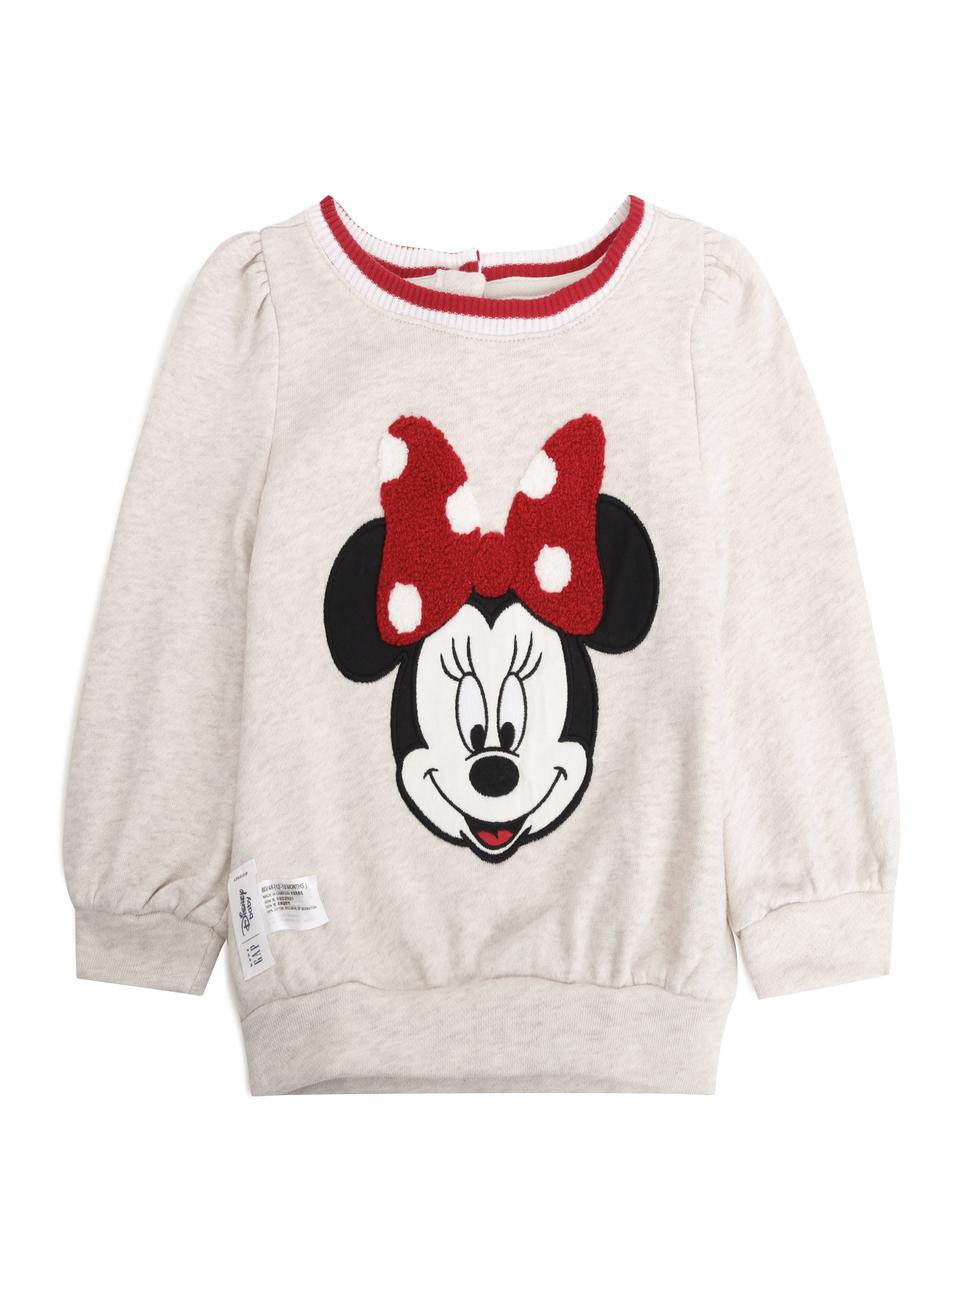 嬰兒裝|Gap x Disney迪士尼聯名 米妮上衣-米灰色